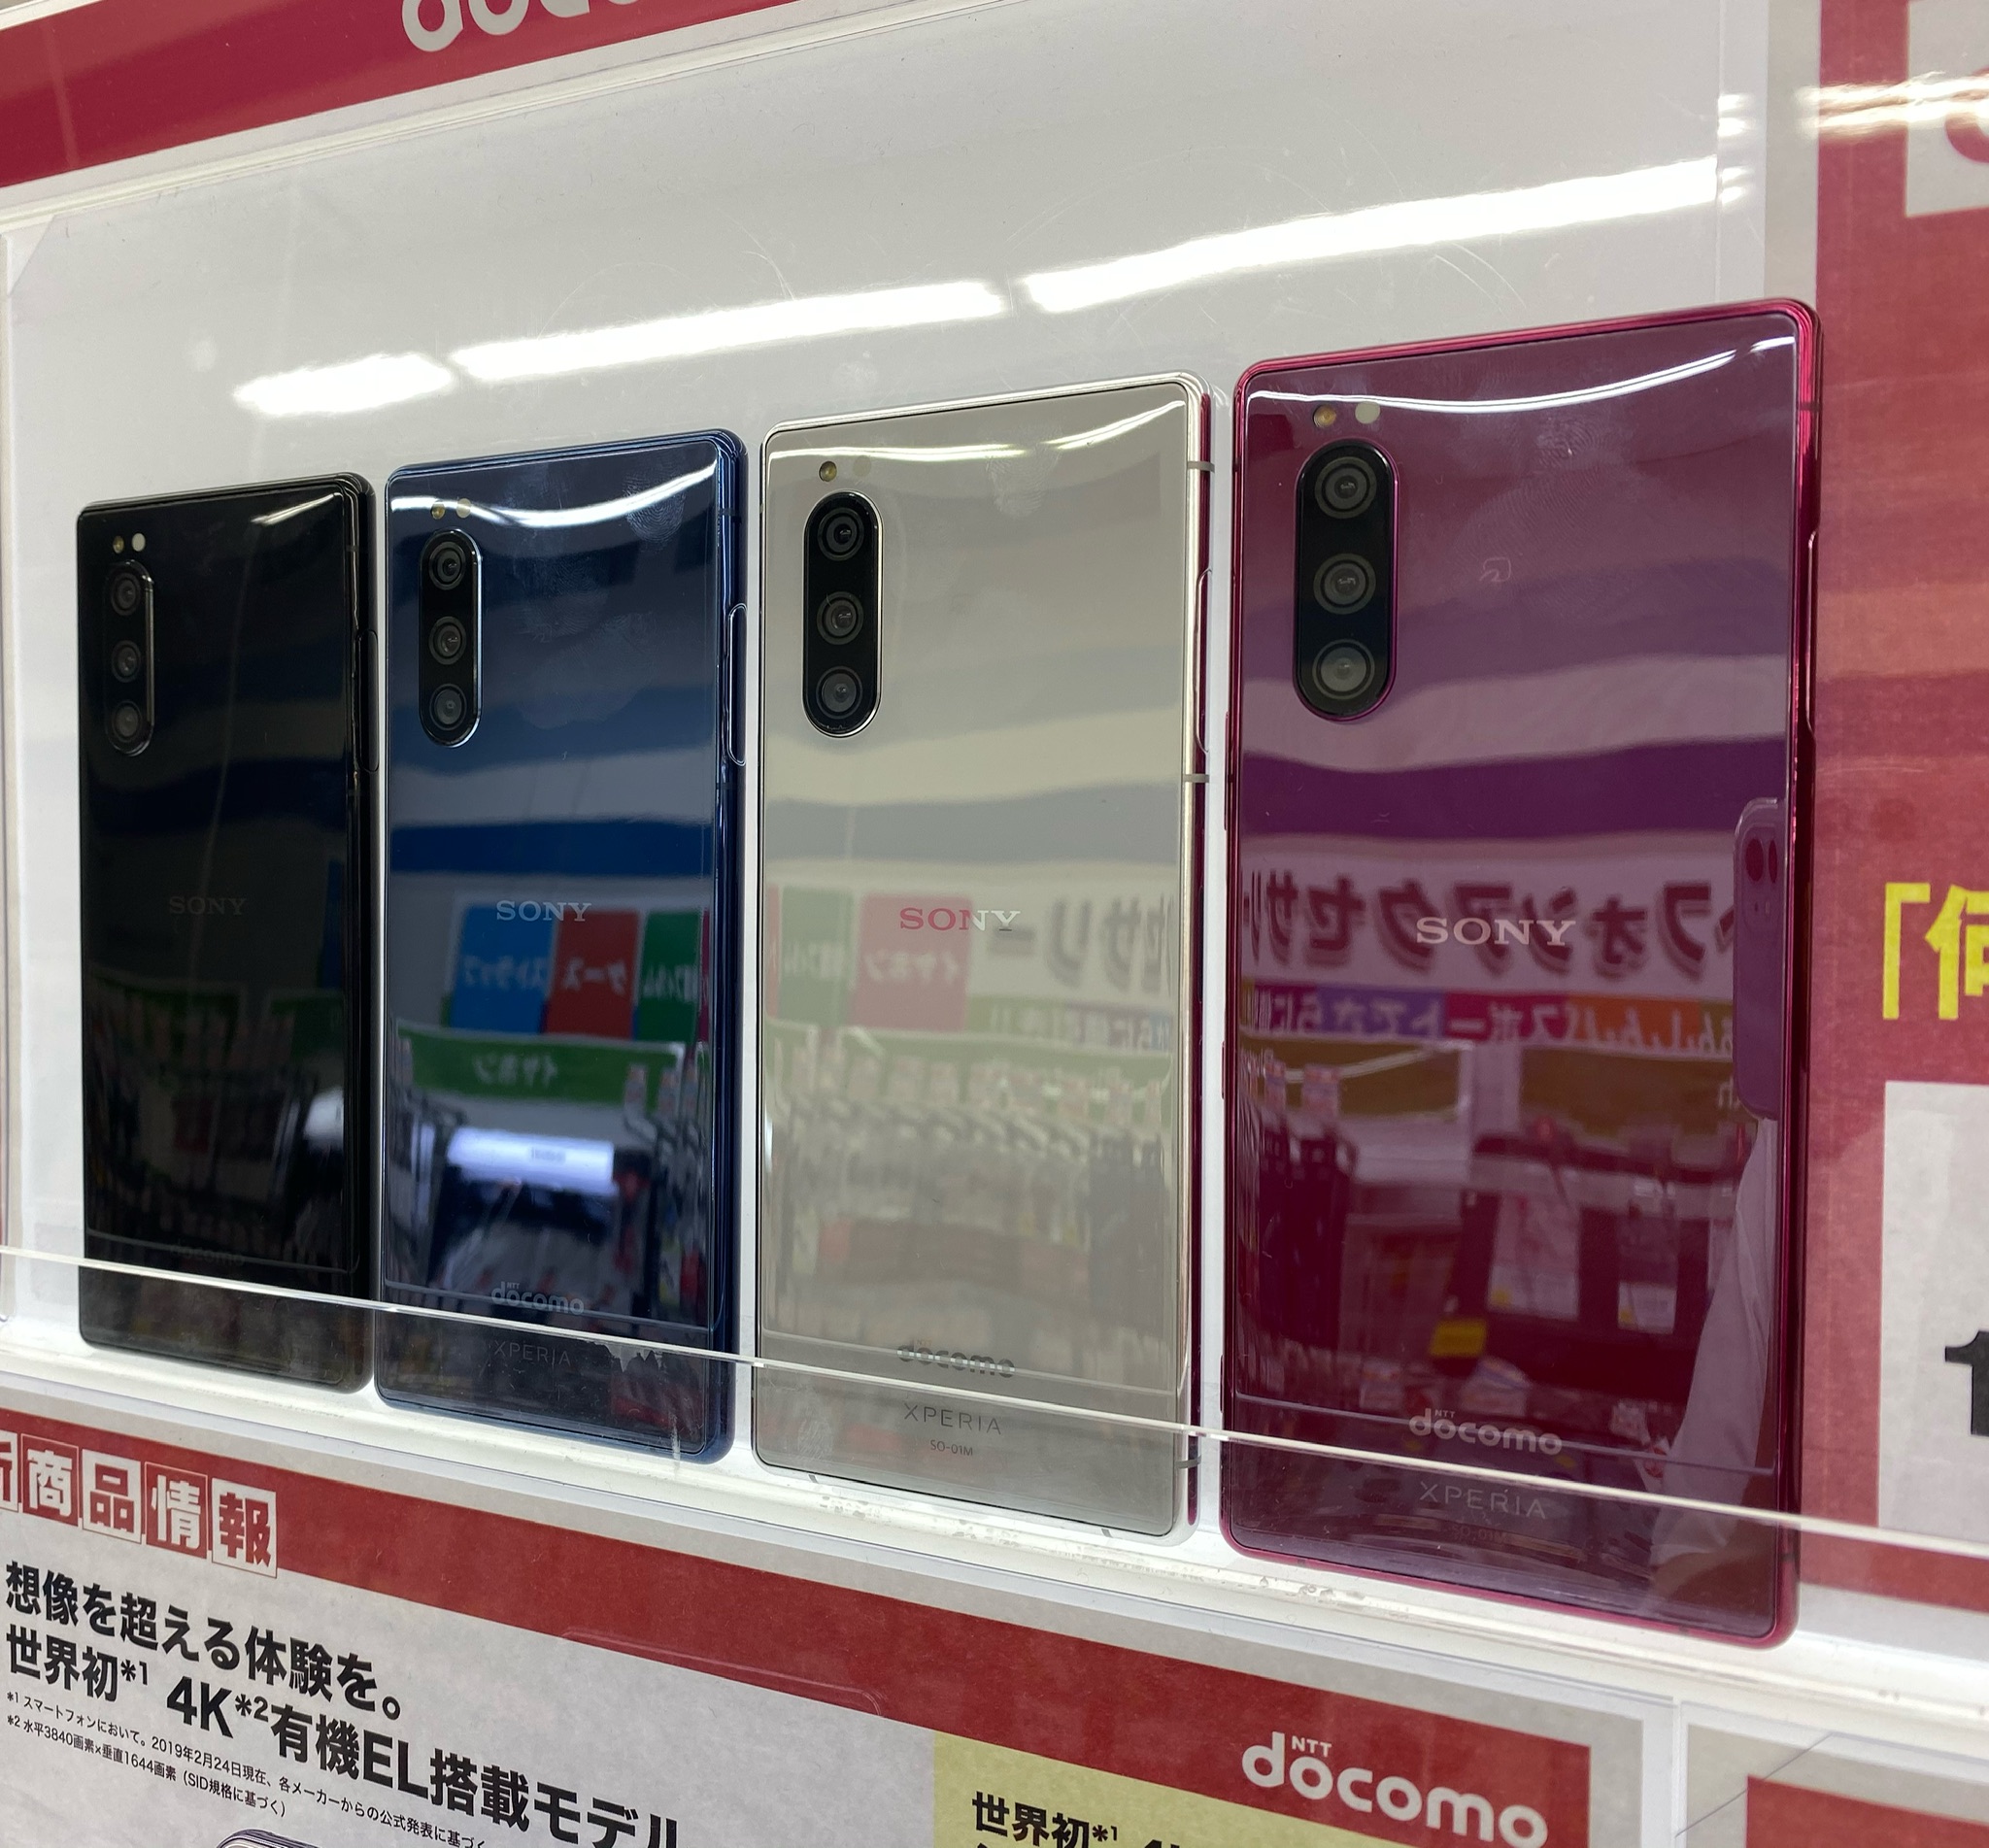 Docomoの新規契約の維持費はいくら 最安値は980円 Iphone大陸